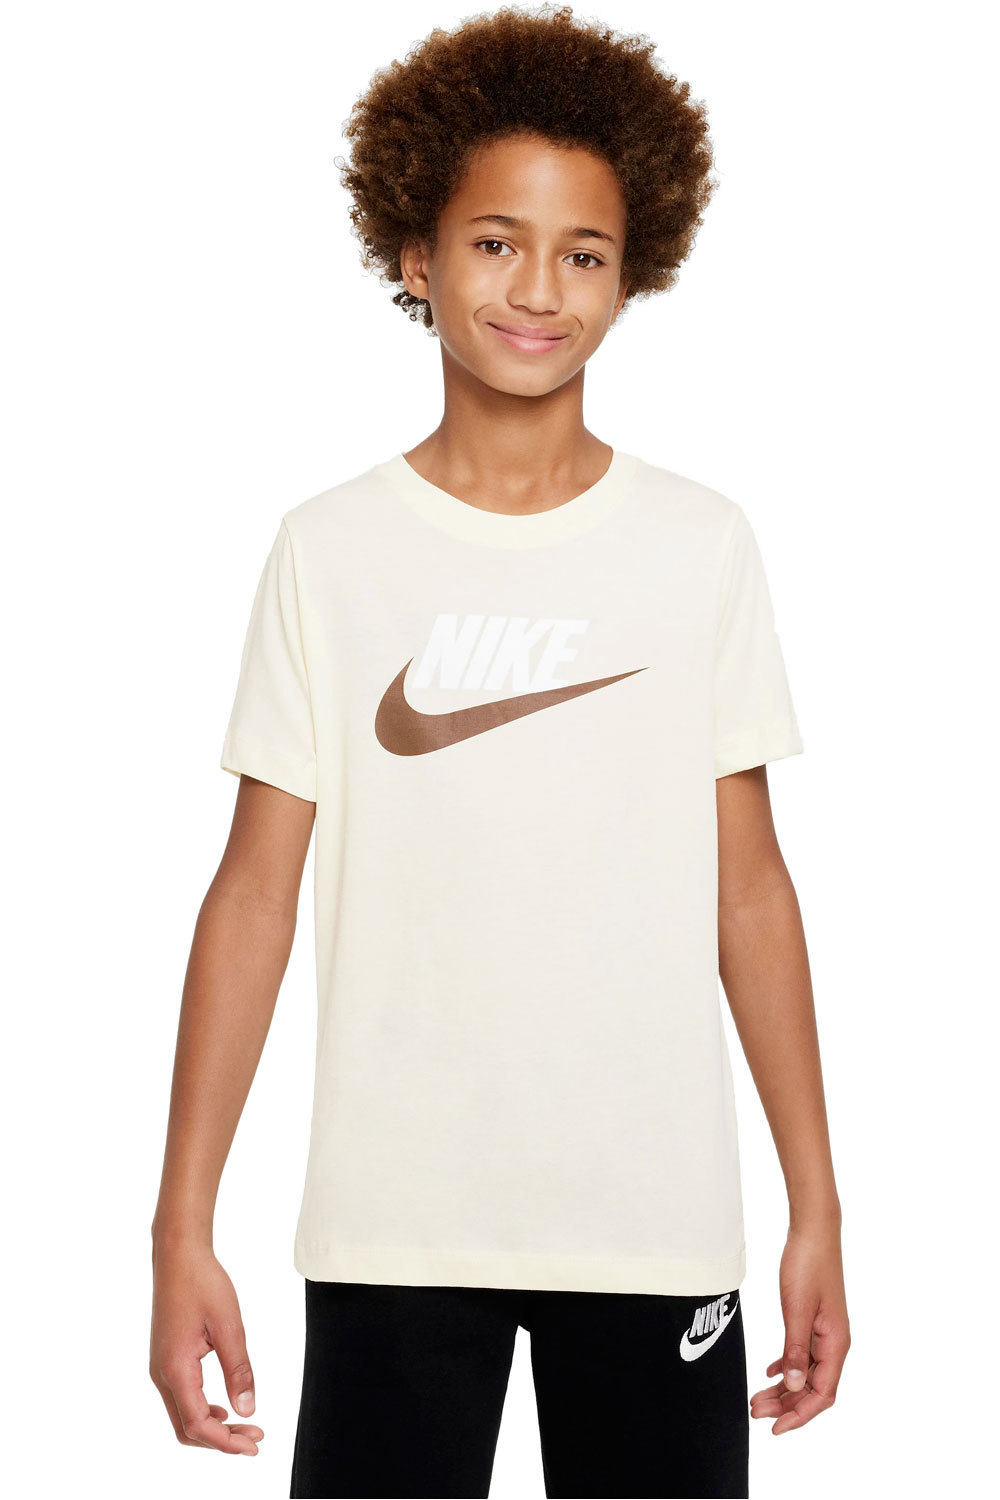 Nike camiseta manga corta niño B NSW TEE FUTURA ICON TD vista frontal